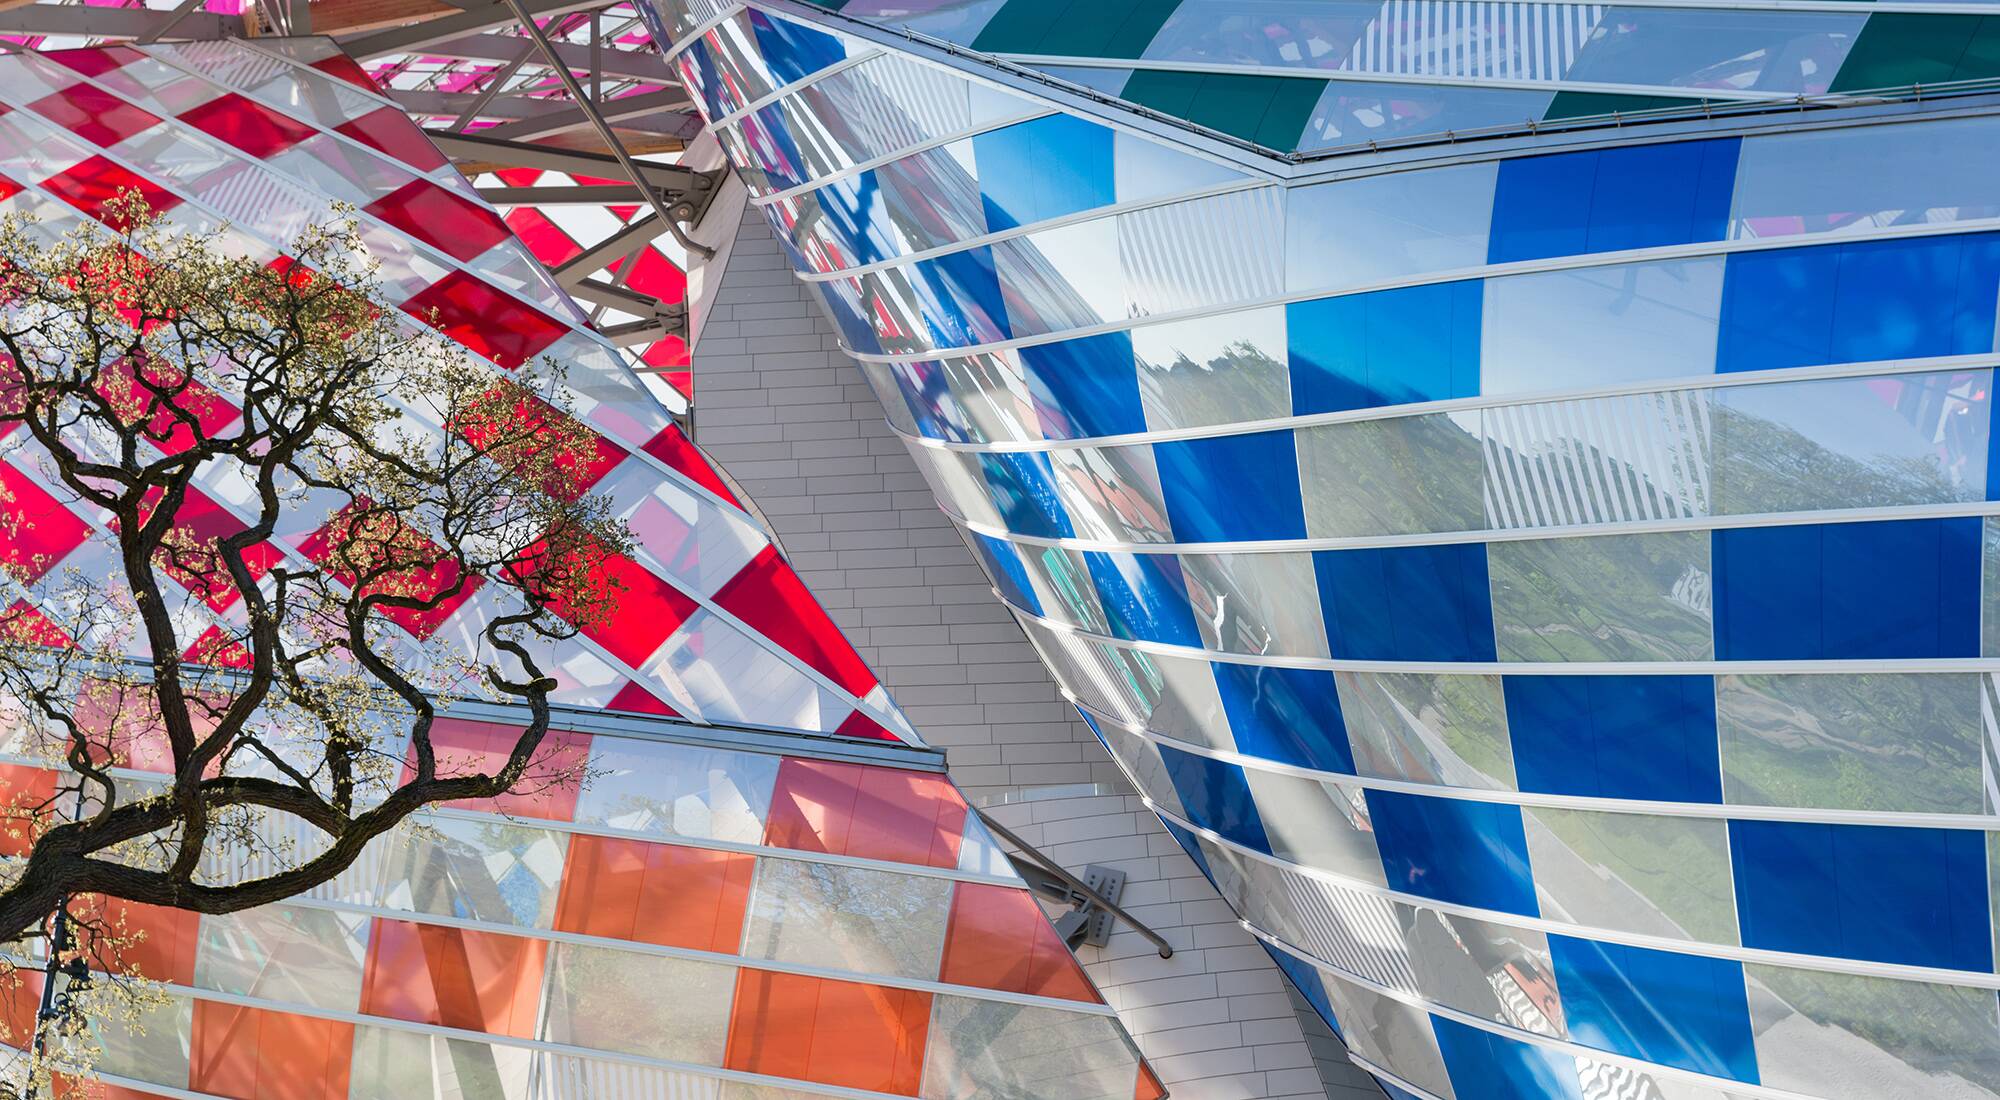 Daniel Buren gives Paris' Fondation Louis Vuitton a Technicolor